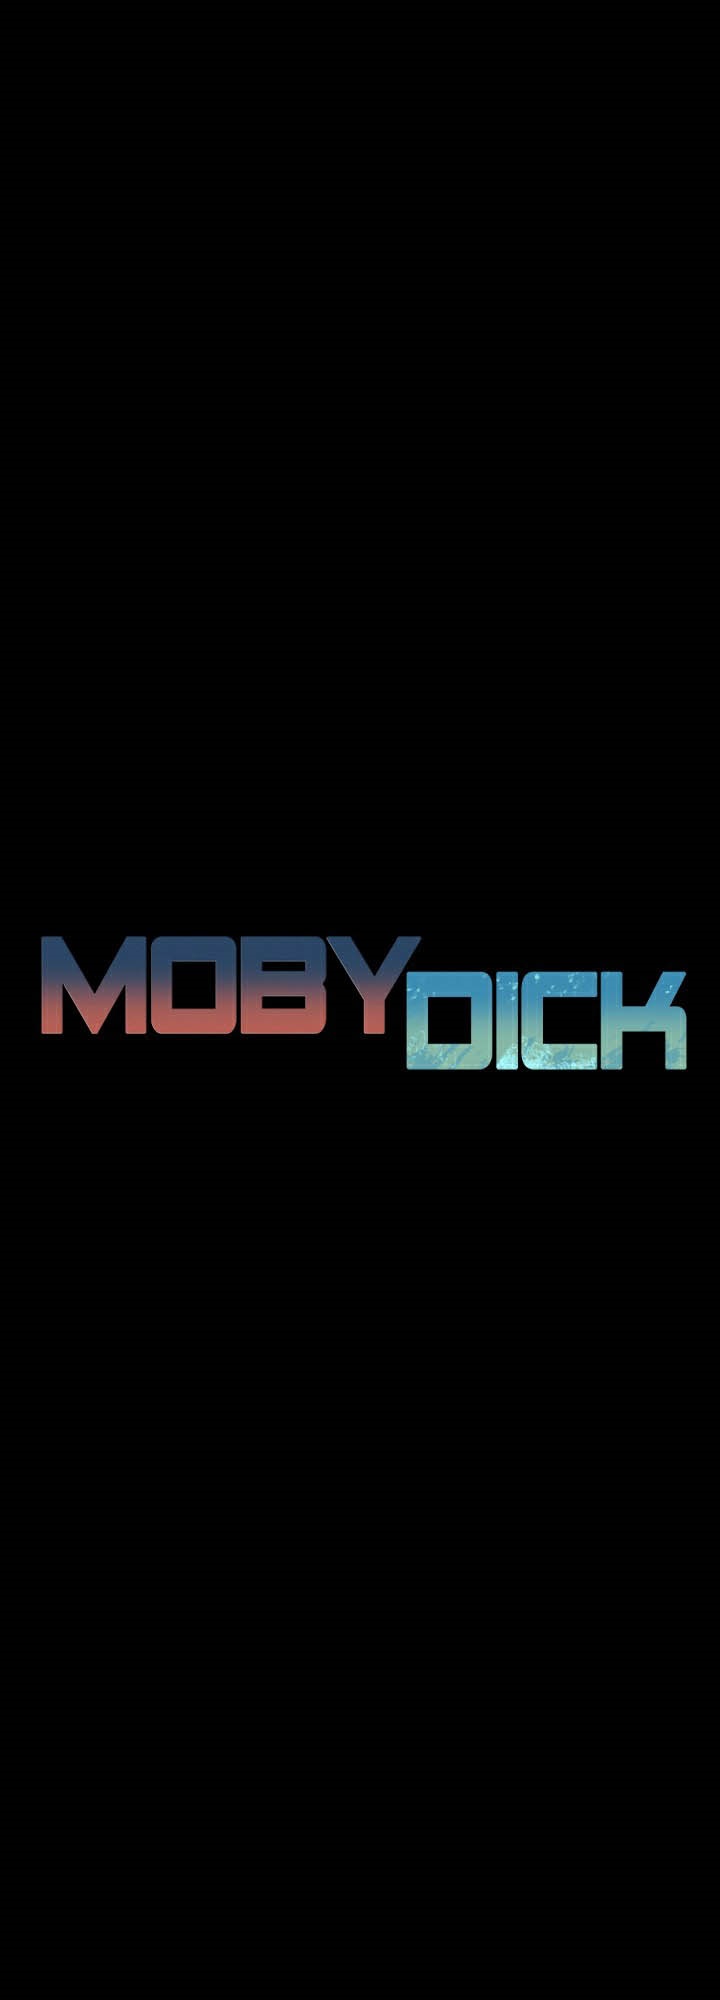 อ่านโดจิน เรื่อง Moby Dick โมบี้ดิ๊ก 26 07